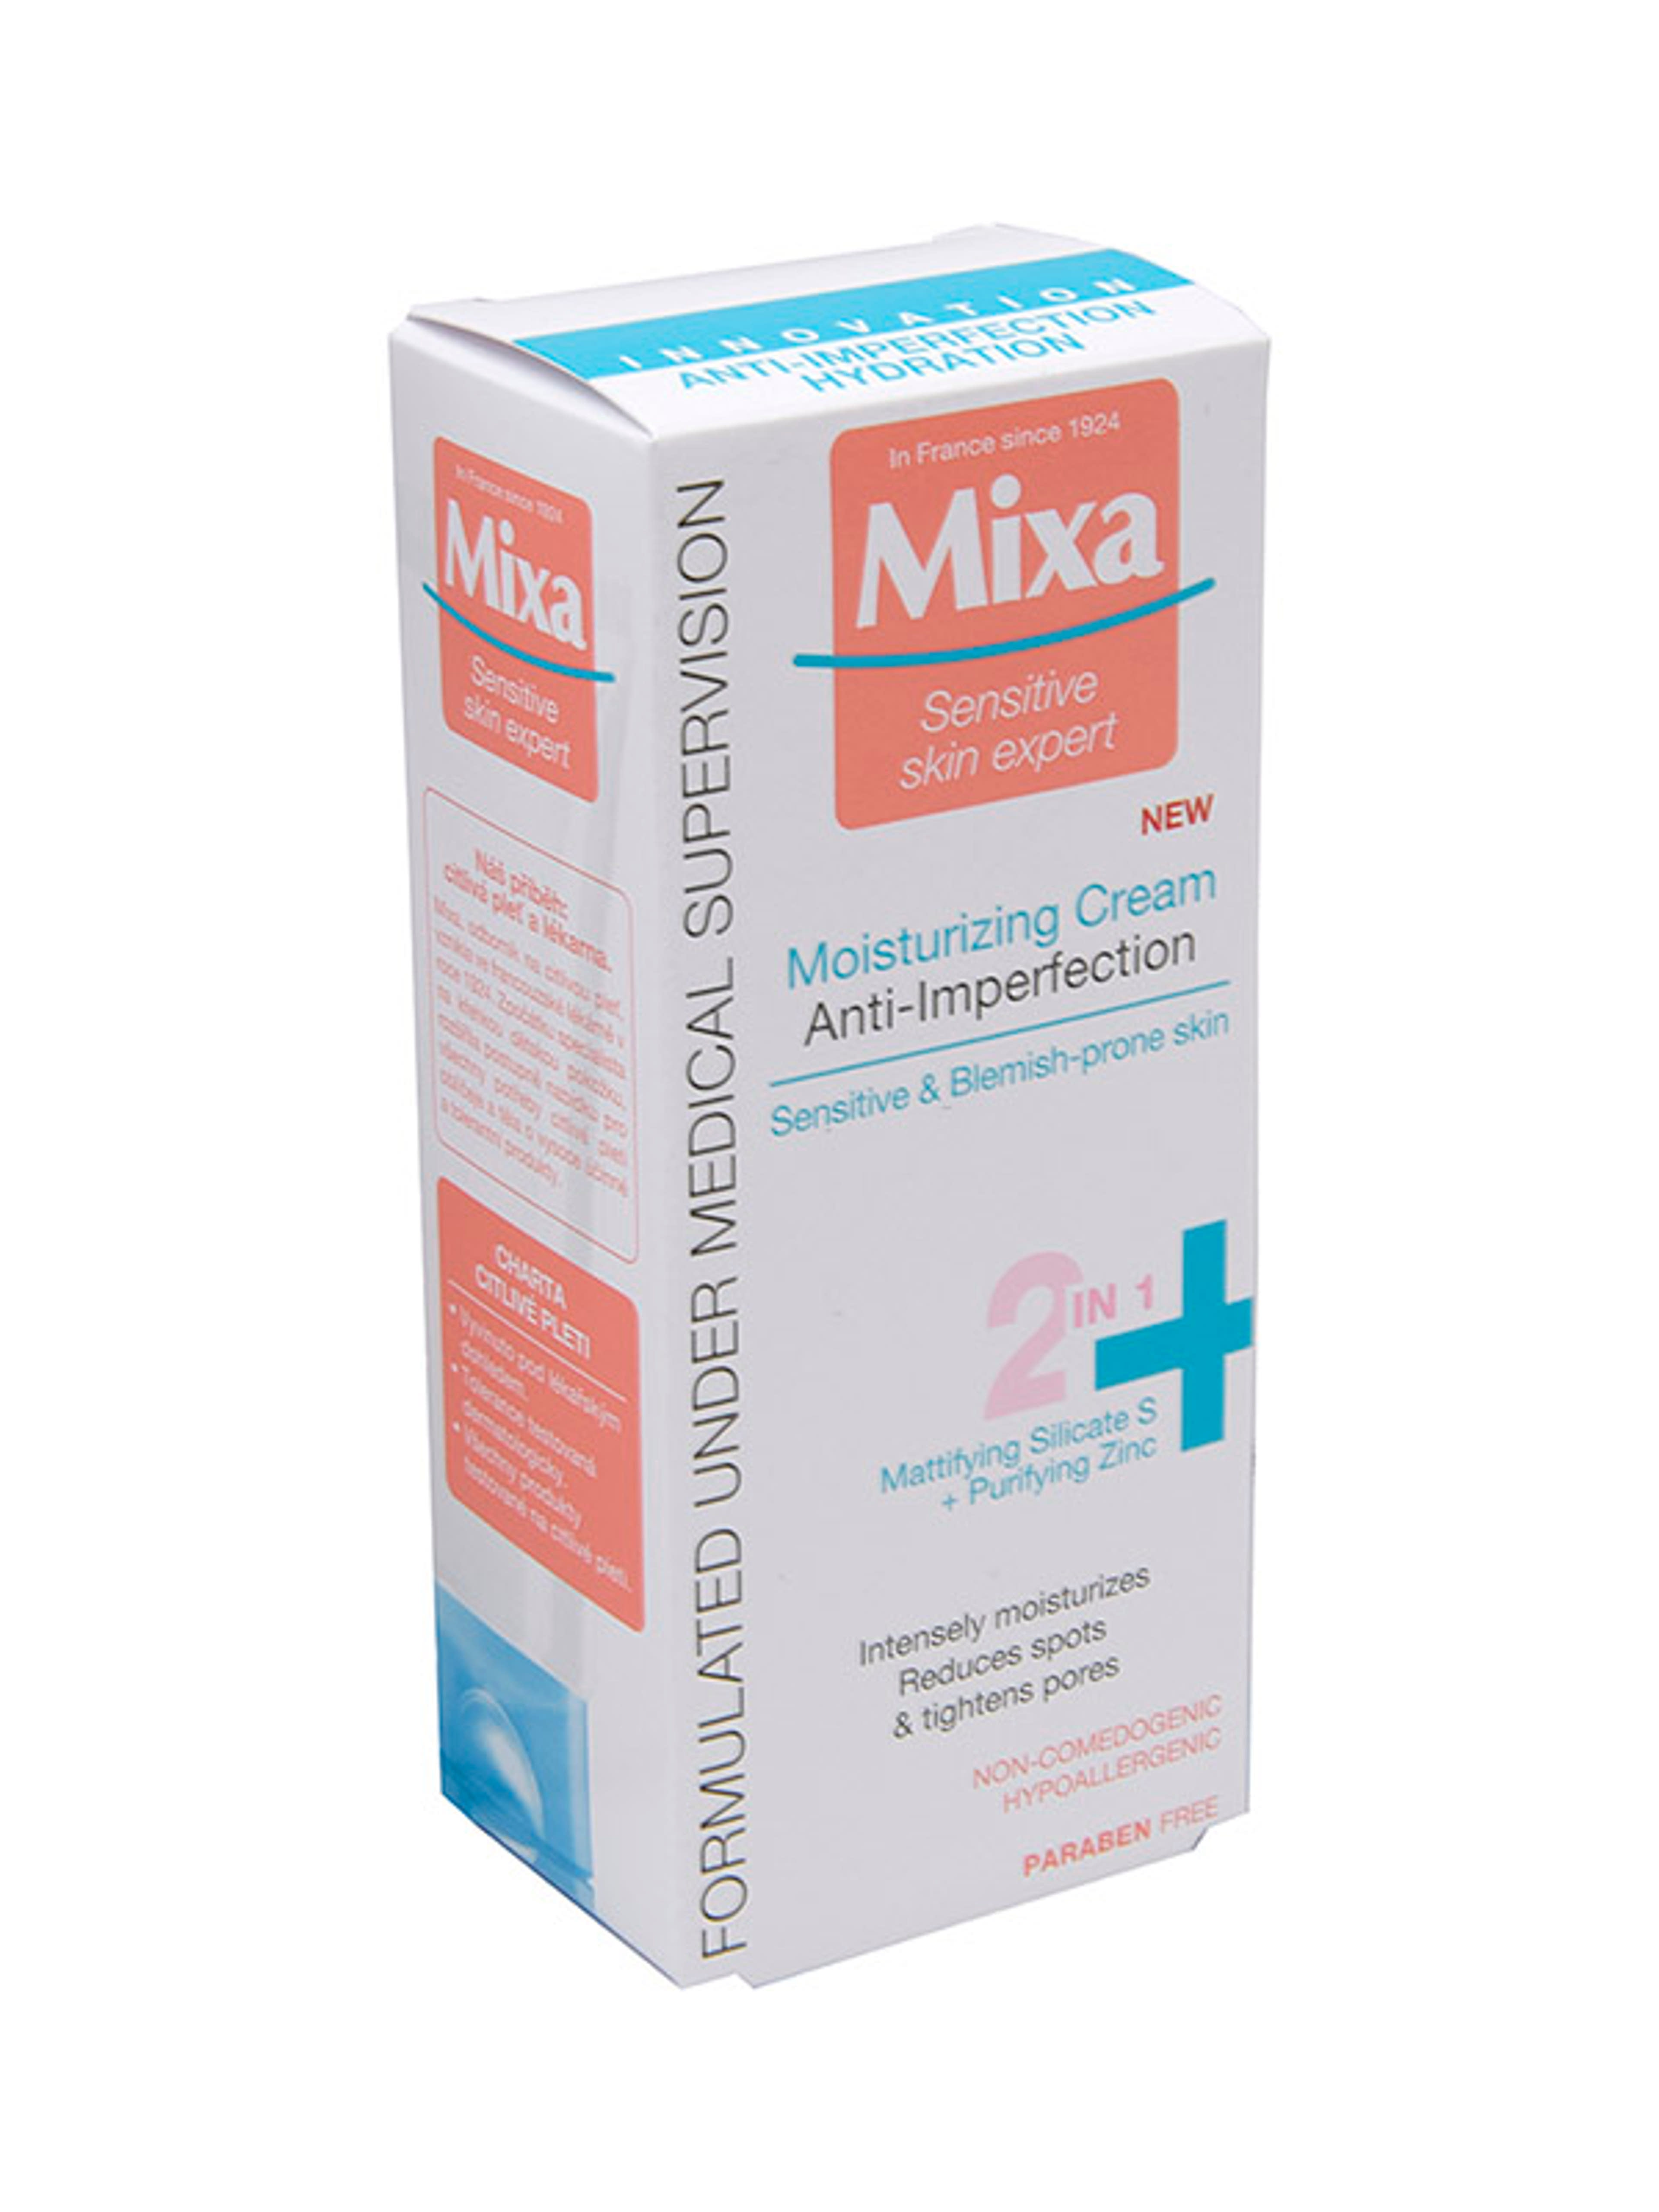 Mixa Anti-Imperfection hidratáló krém 2in1 bőrhibákra hajlamos bőrre - 50 ml-1